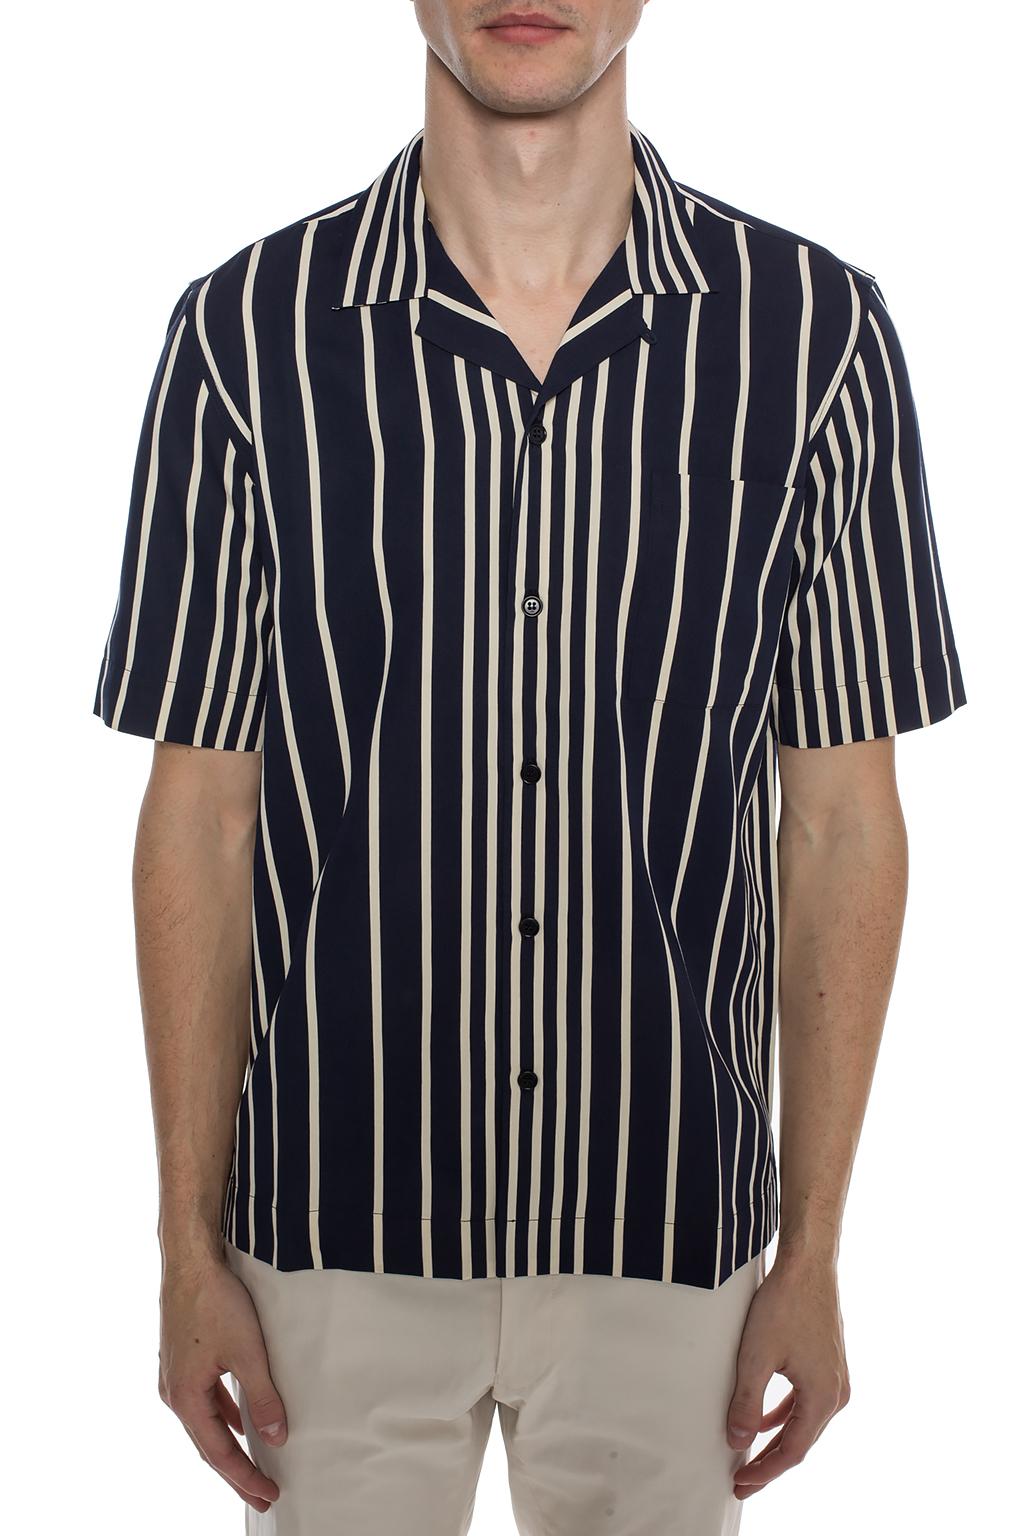 dries van noten striped shirt